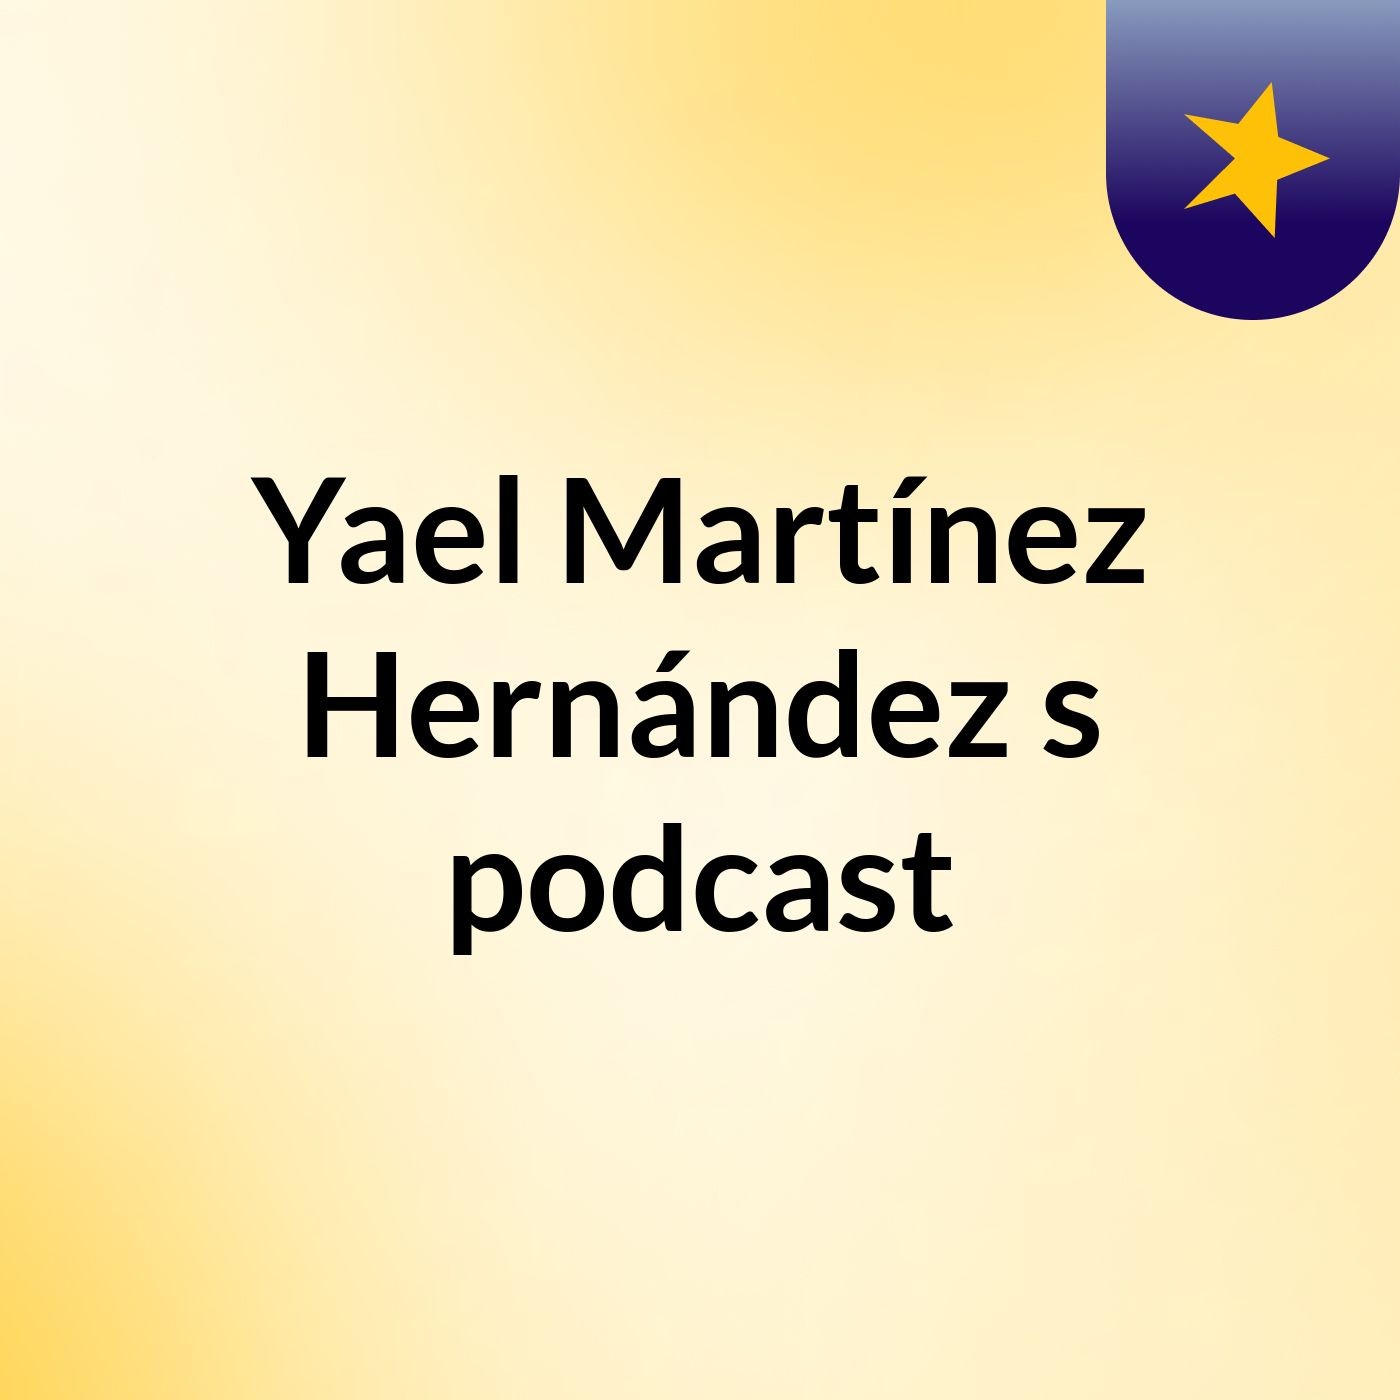 Yael Martínez Hernández's podcast